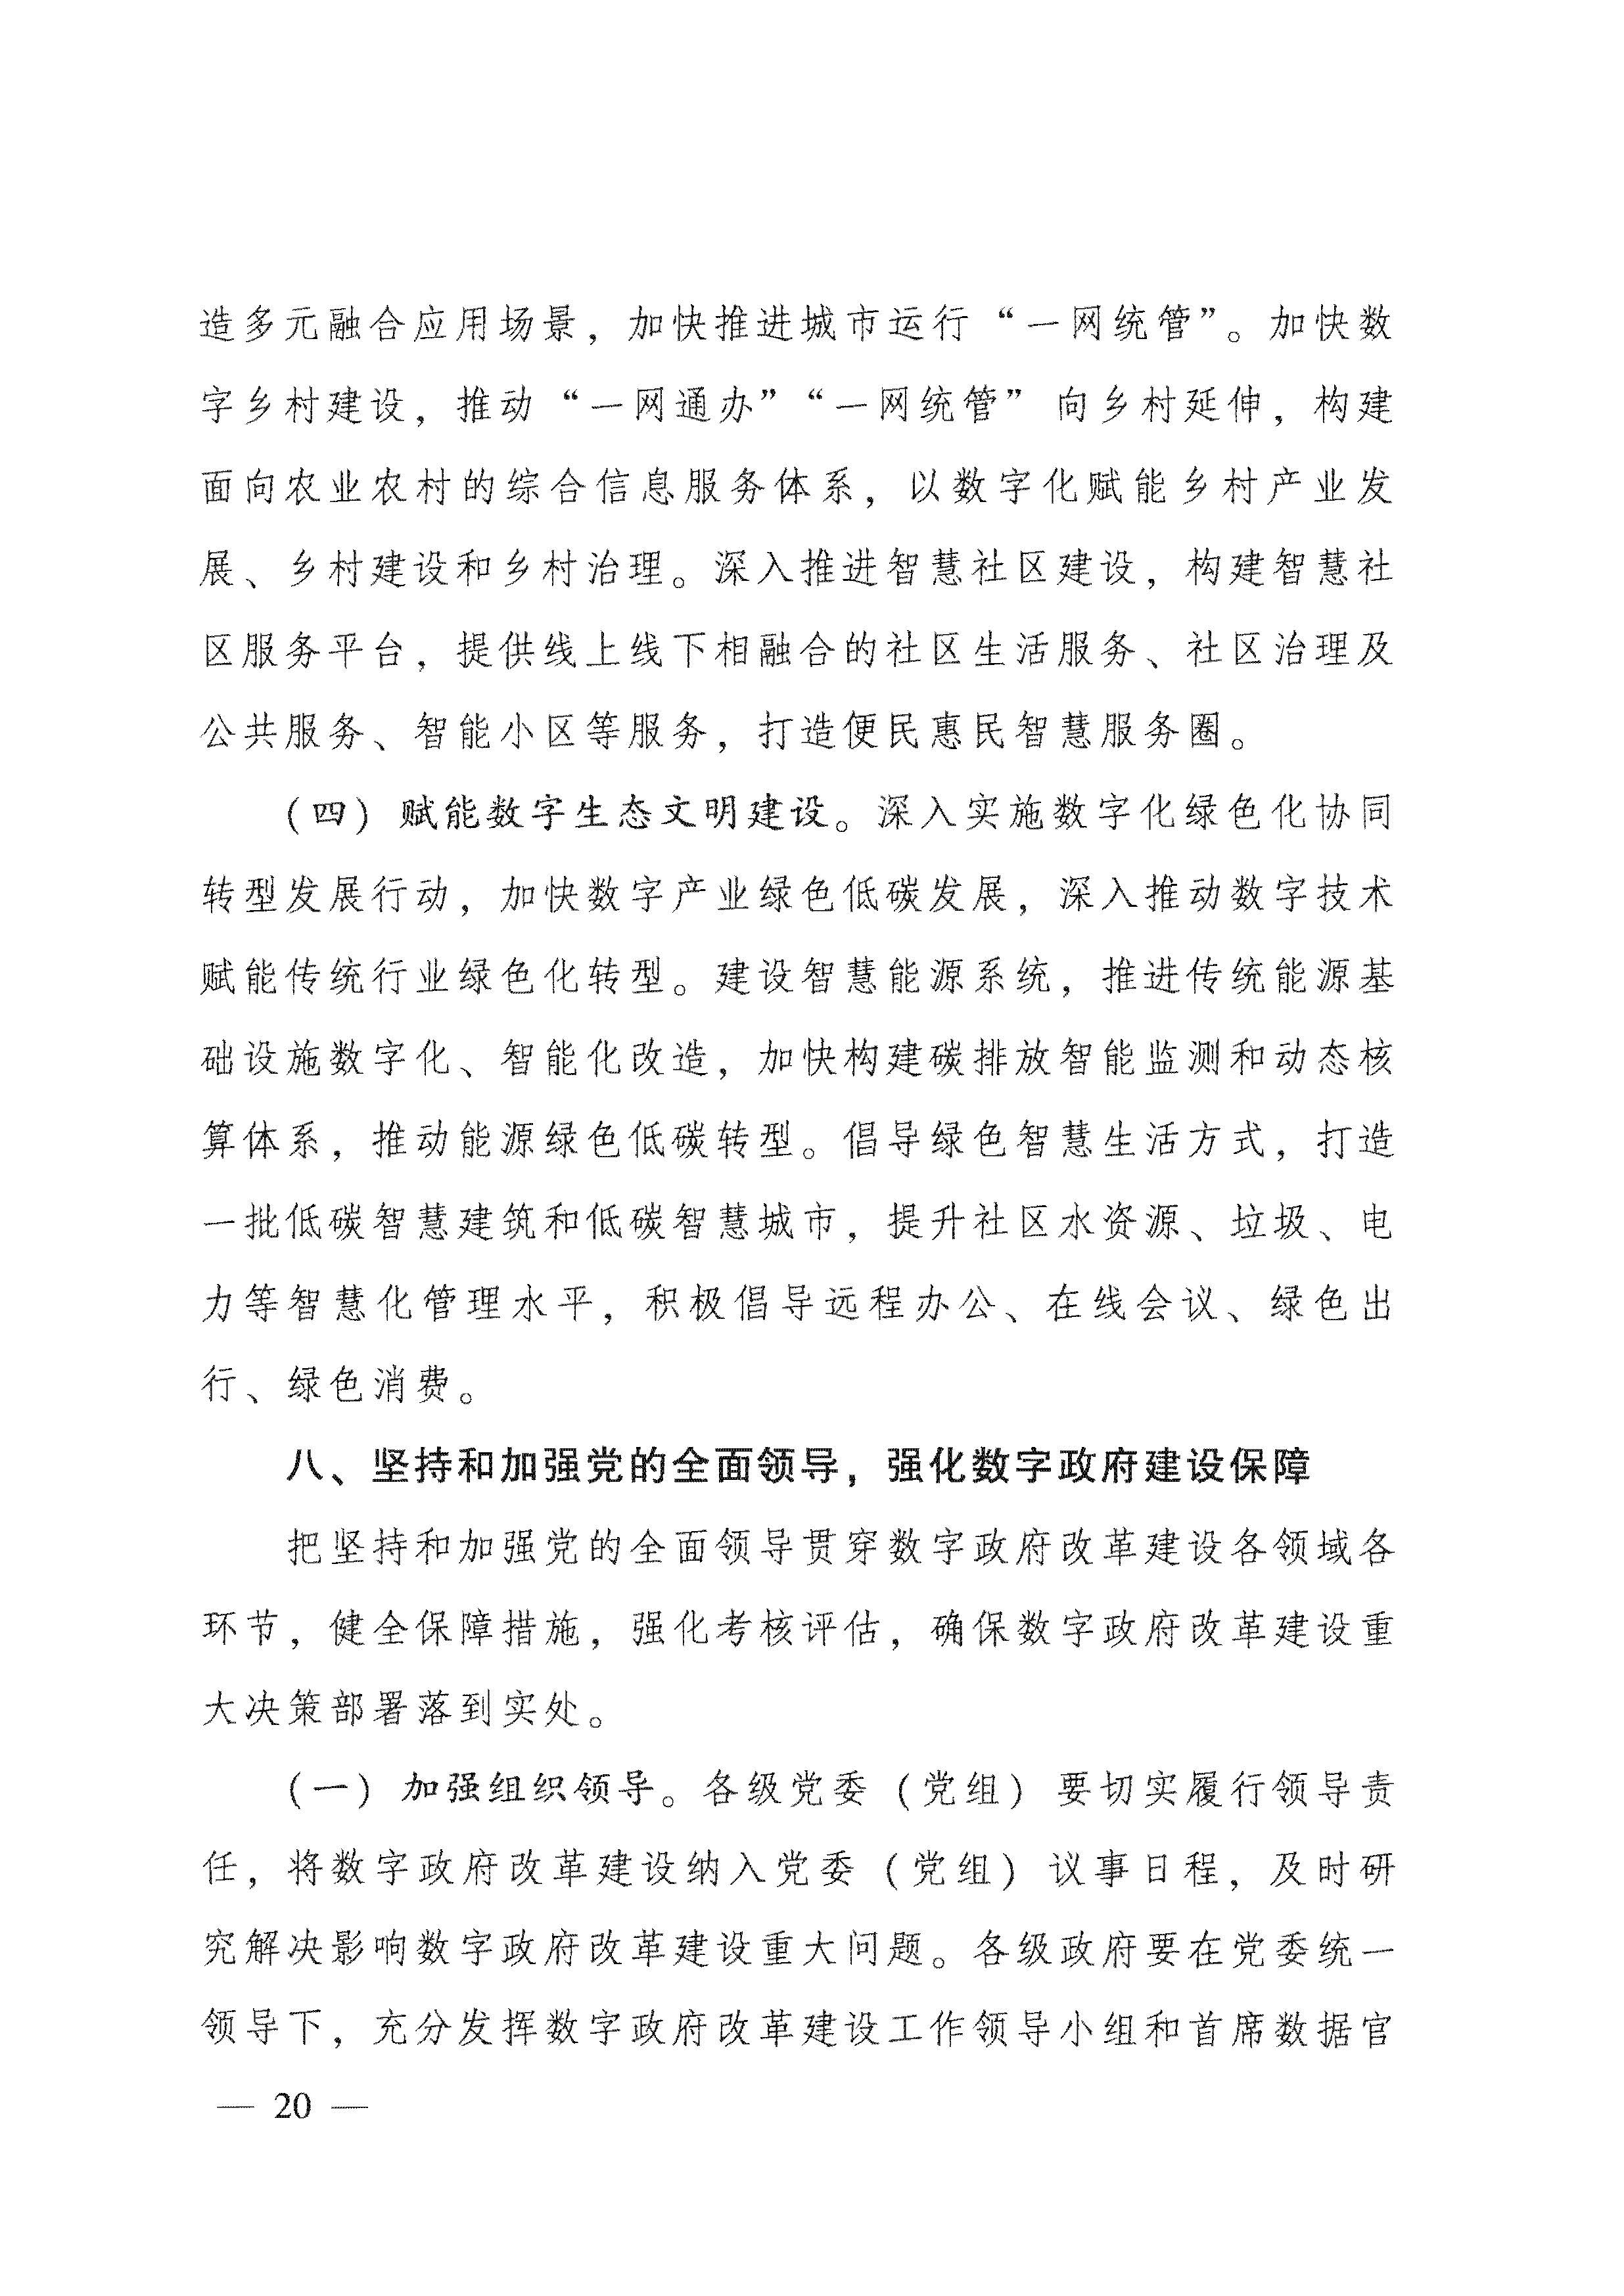 广东省人民政府关于进一步深化数字政府改革建设的实施意见_页面_20.jpg